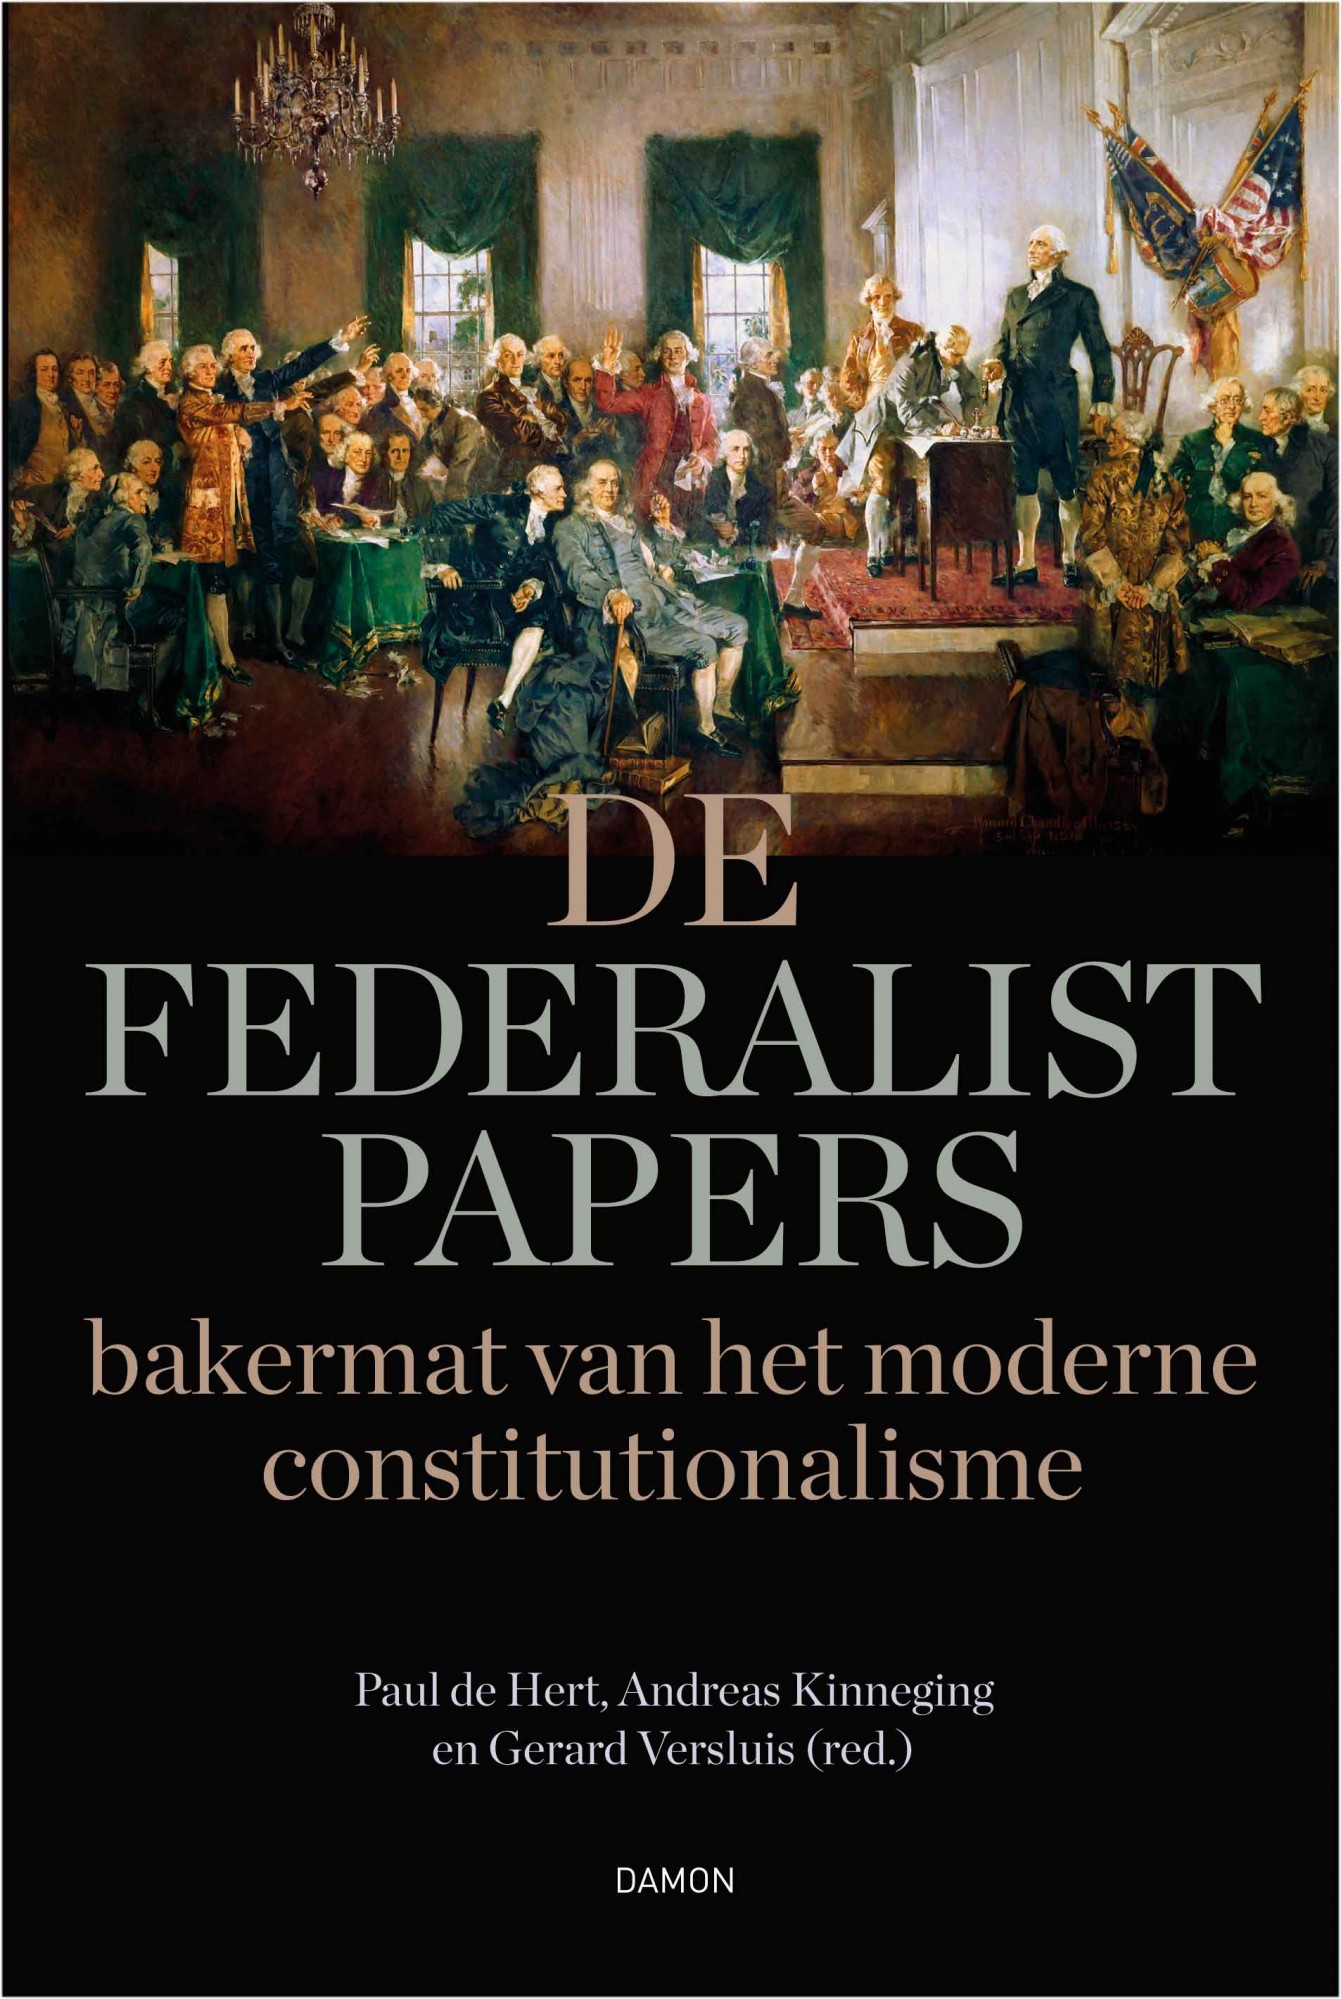 De Federalist Papers